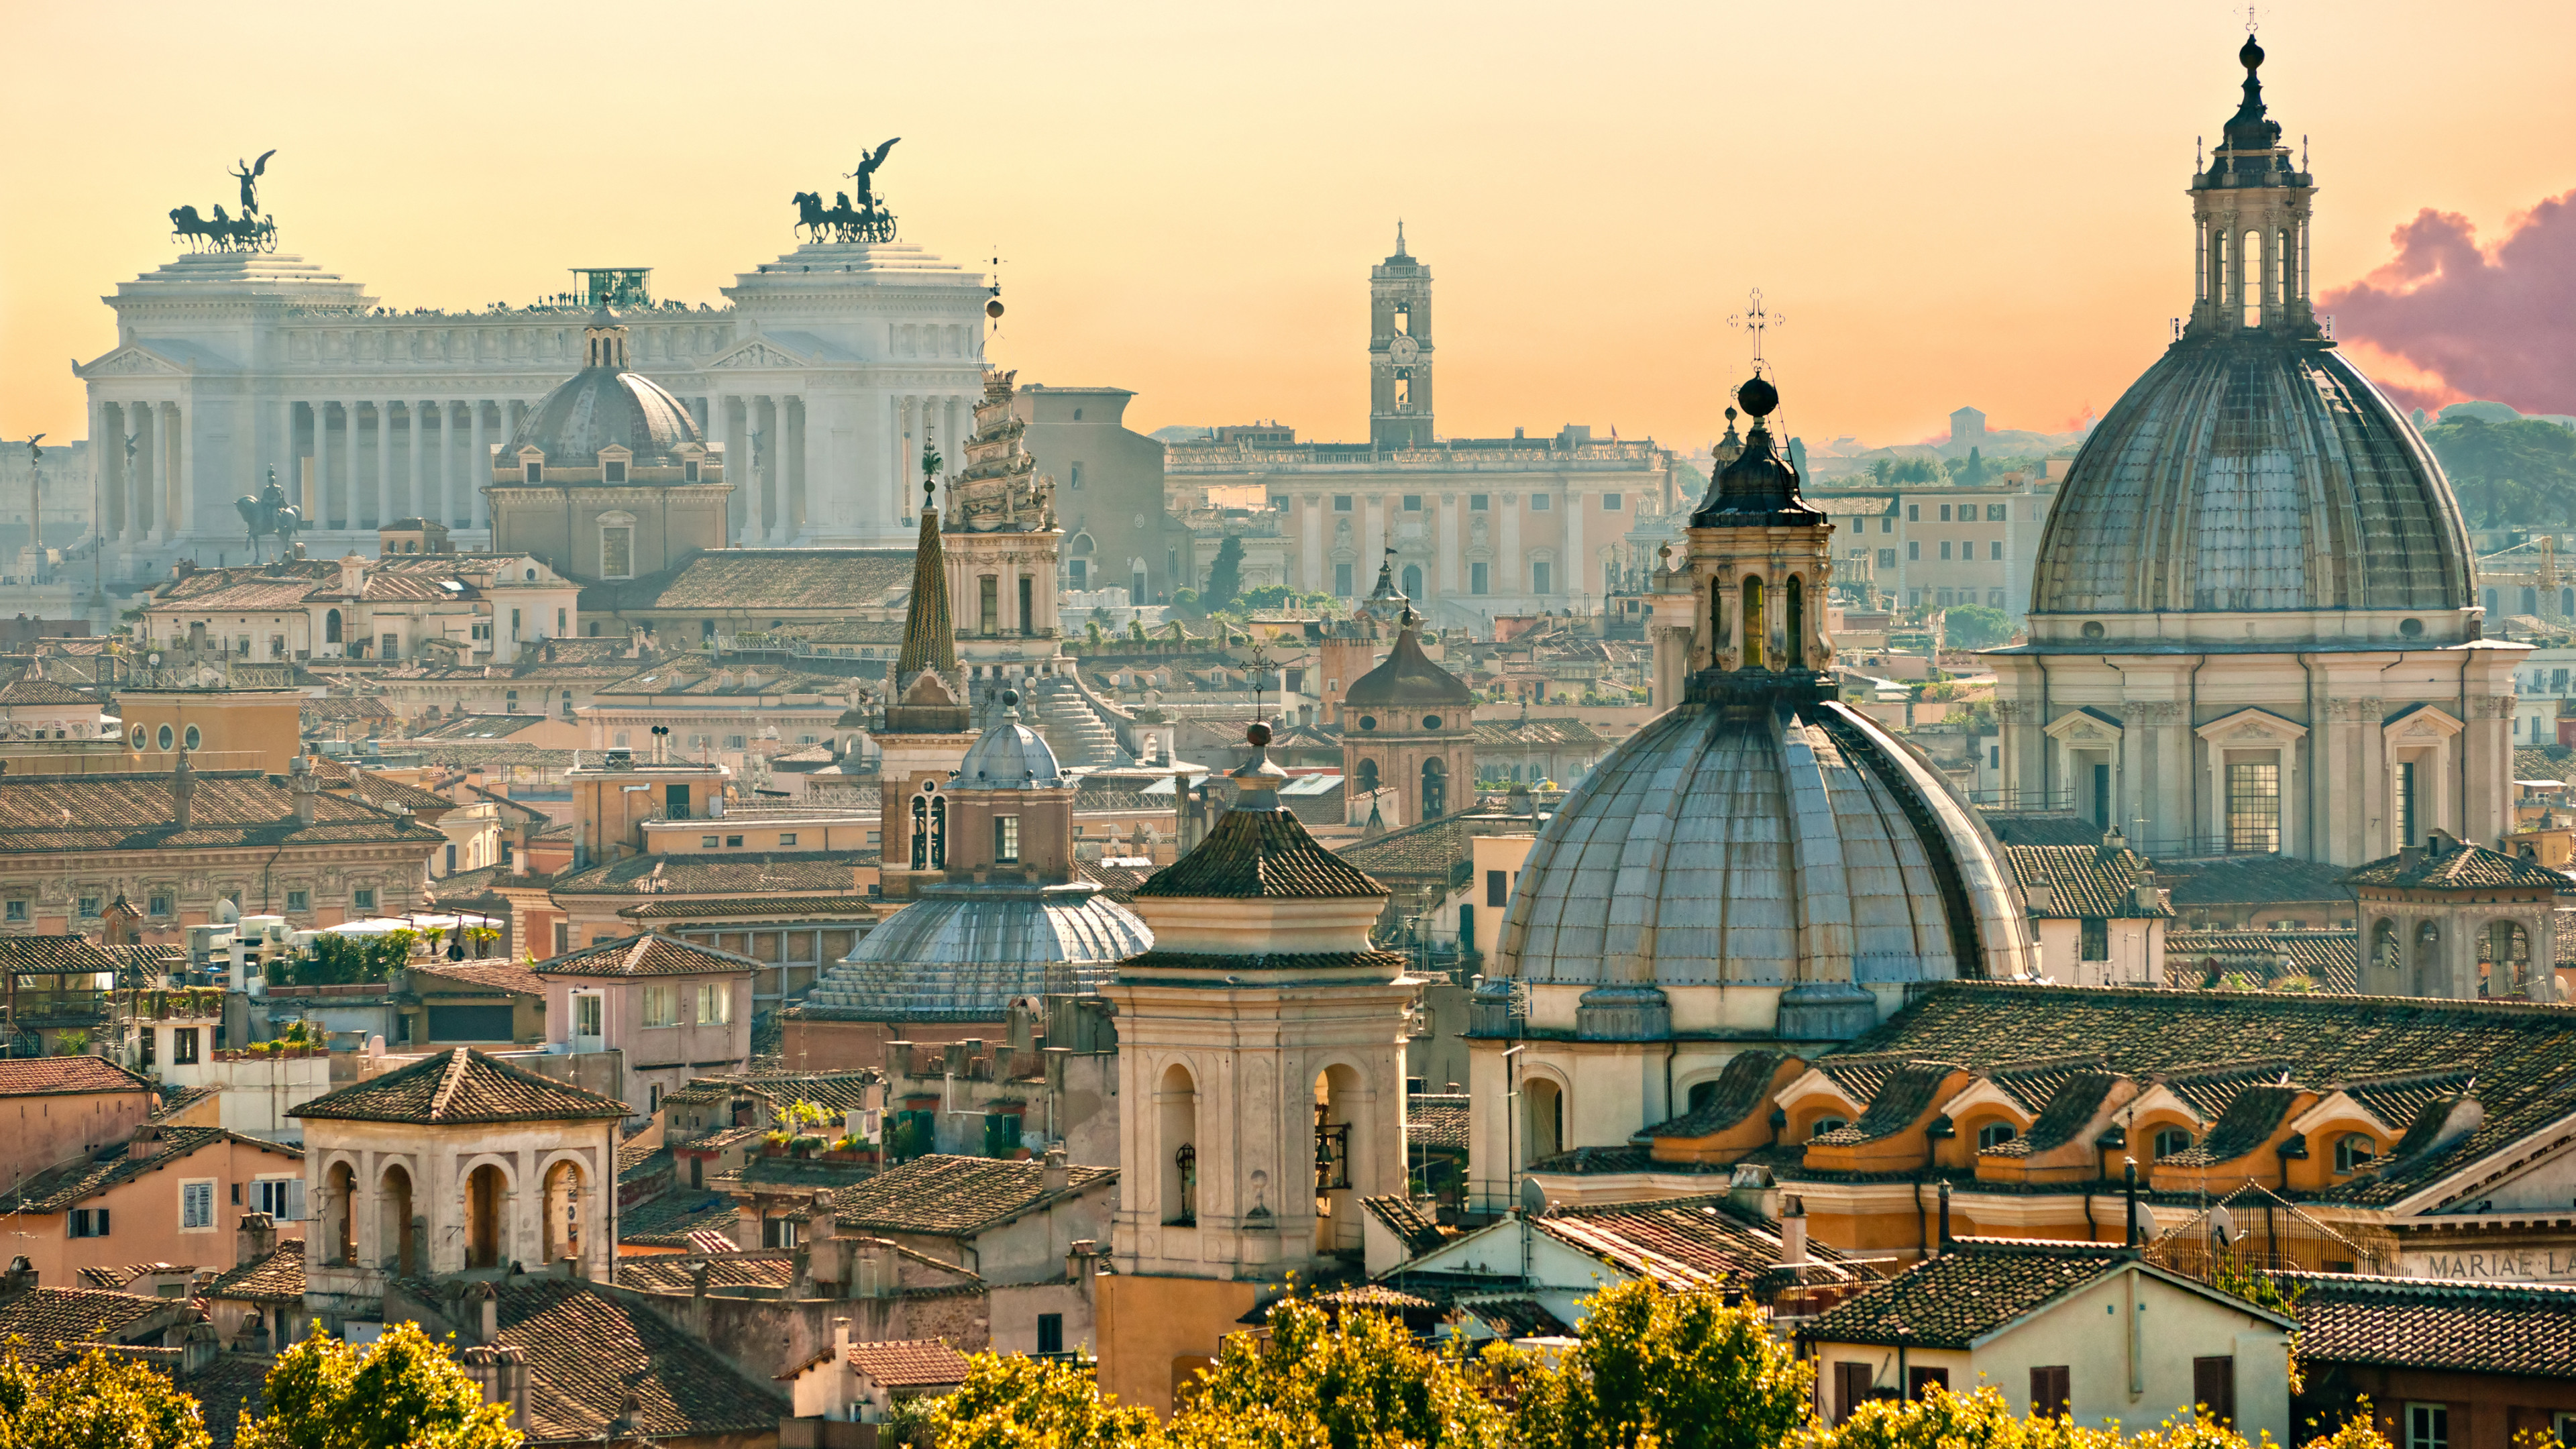 Vatican-City-1001-travel-destinations-Wallpaper-city | 1001 Travel  Destinations